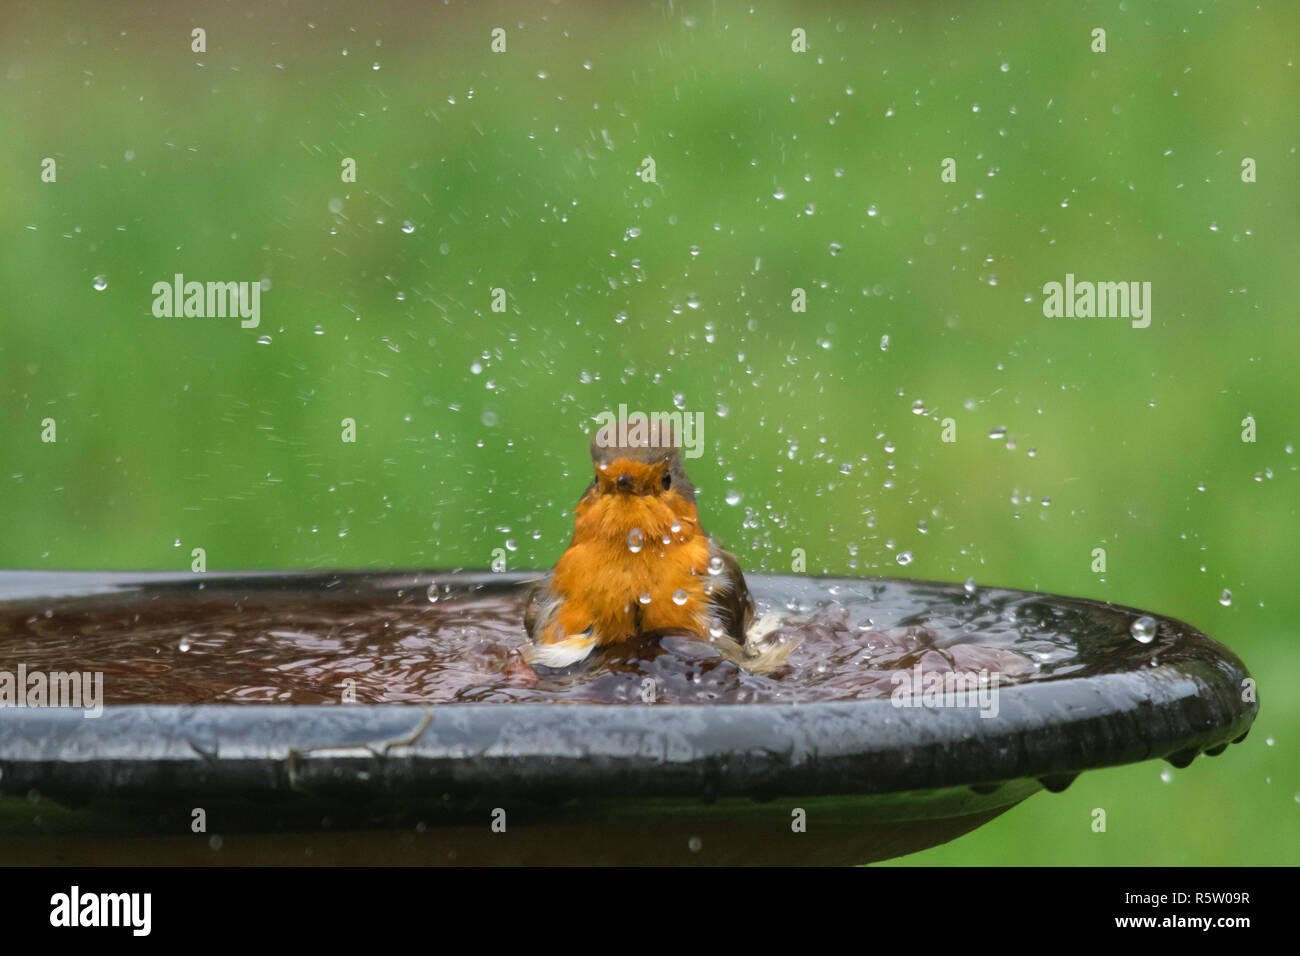 Robin (Erithacus rubecula), small bird having a bath, garden wildlife, animal humour, humor Stock Photo